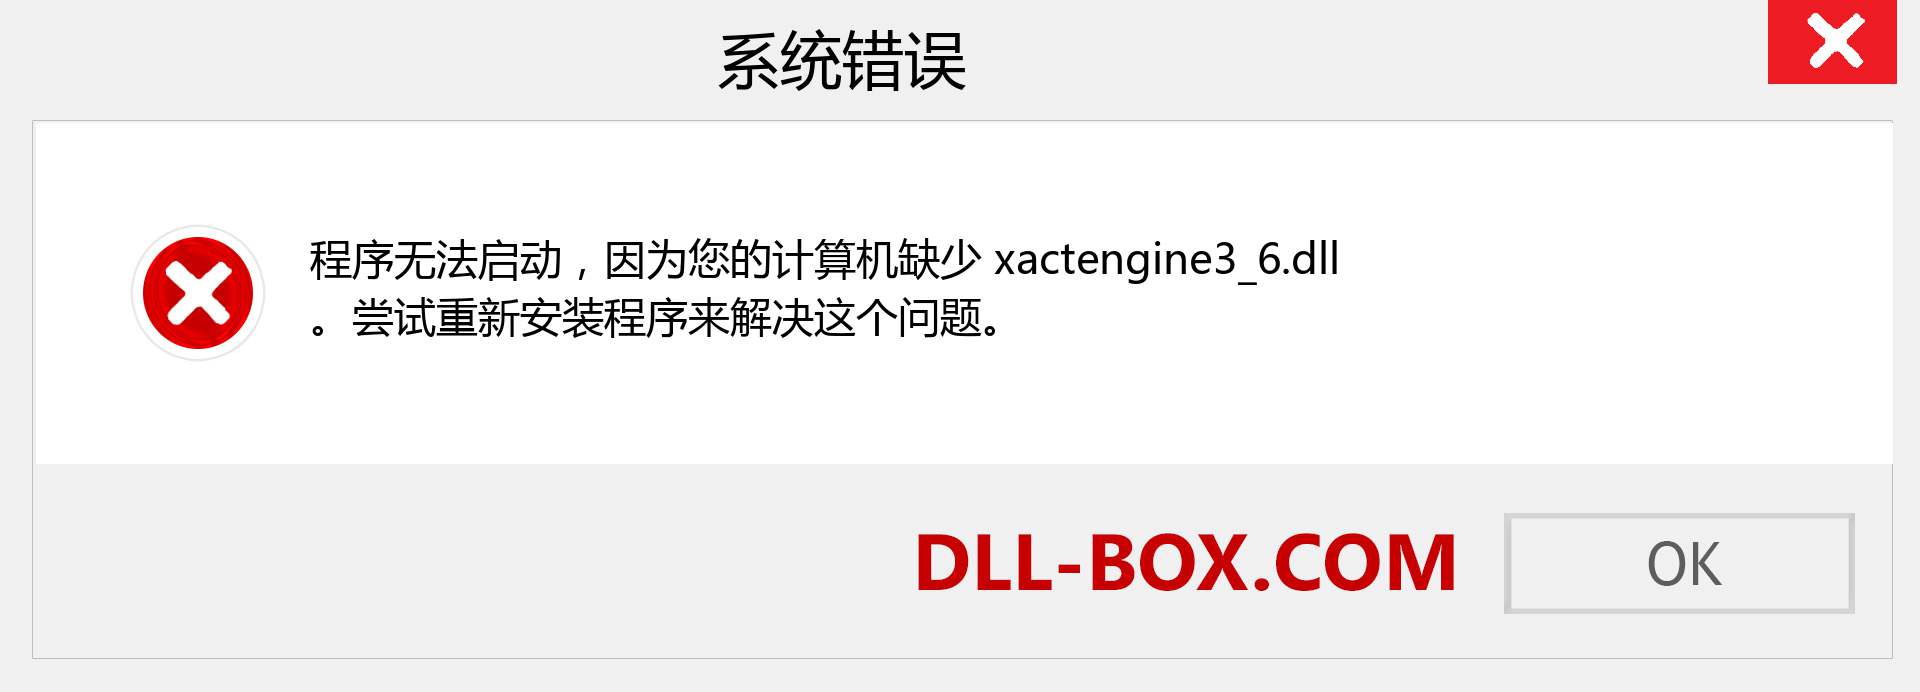 xactengine3_6.dll 文件丢失？。 适用于 Windows 7、8、10 的下载 - 修复 Windows、照片、图像上的 xactengine3_6 dll 丢失错误